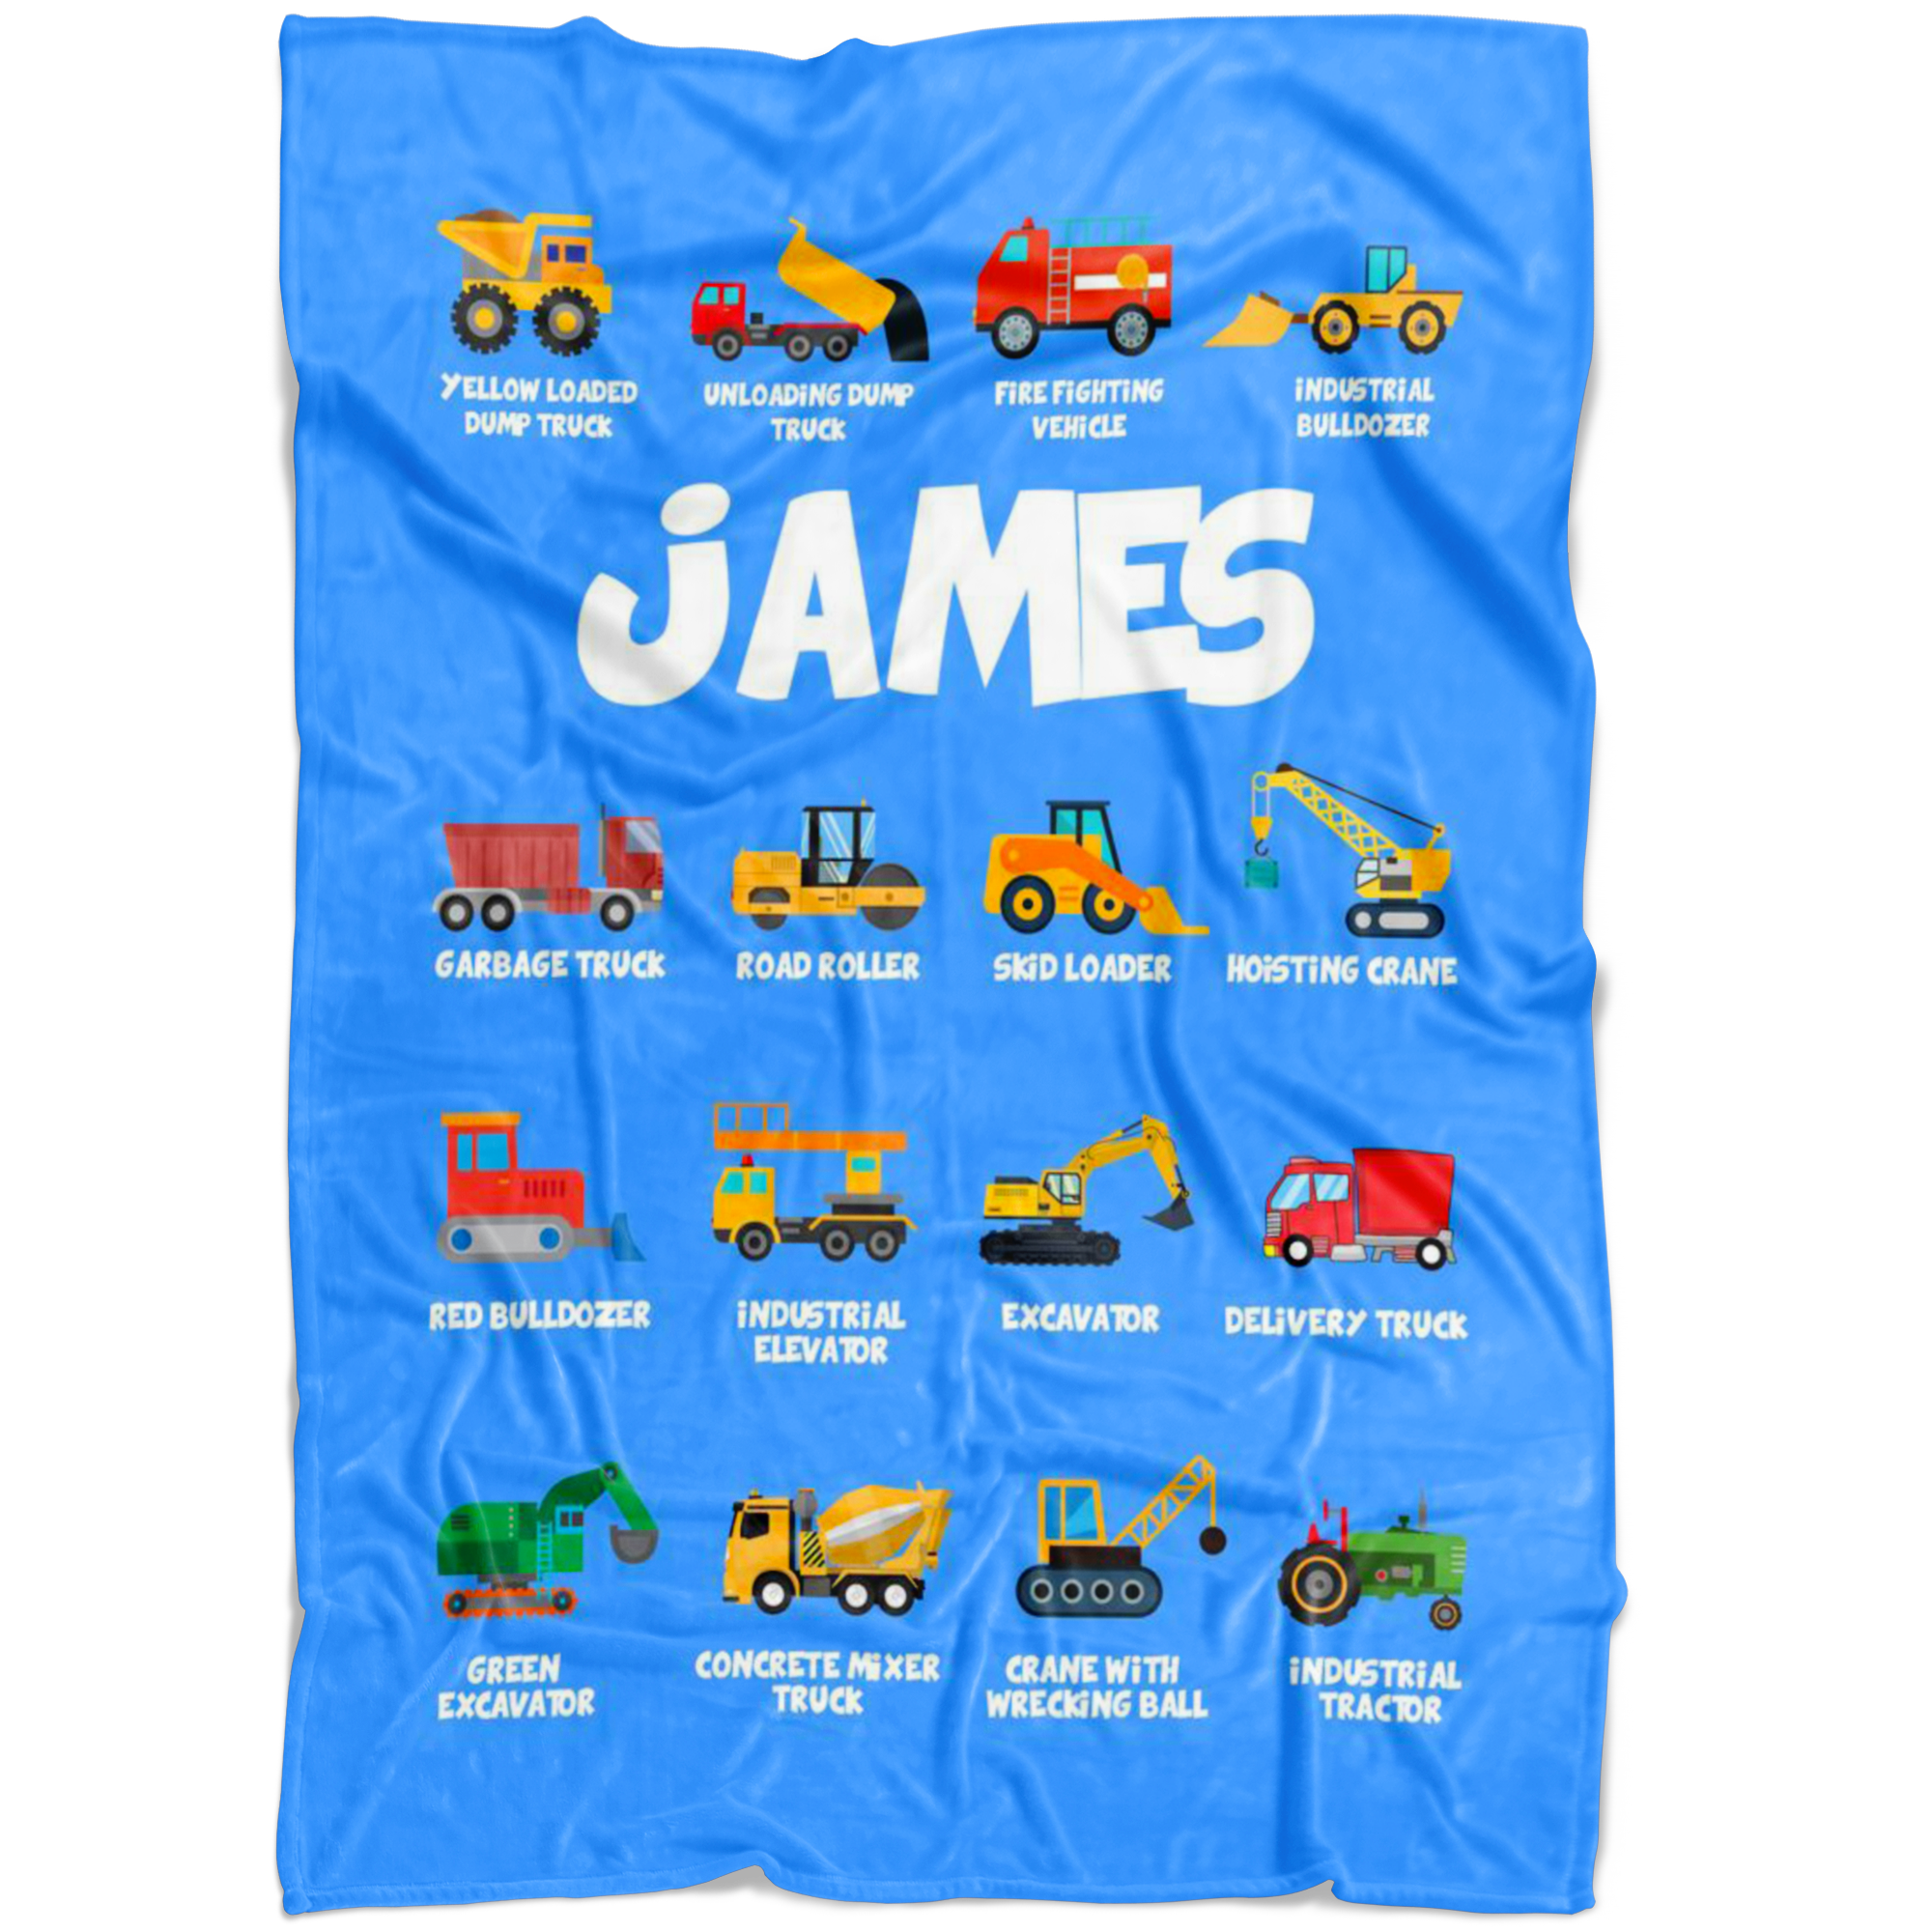 James Construction Blanket Blue